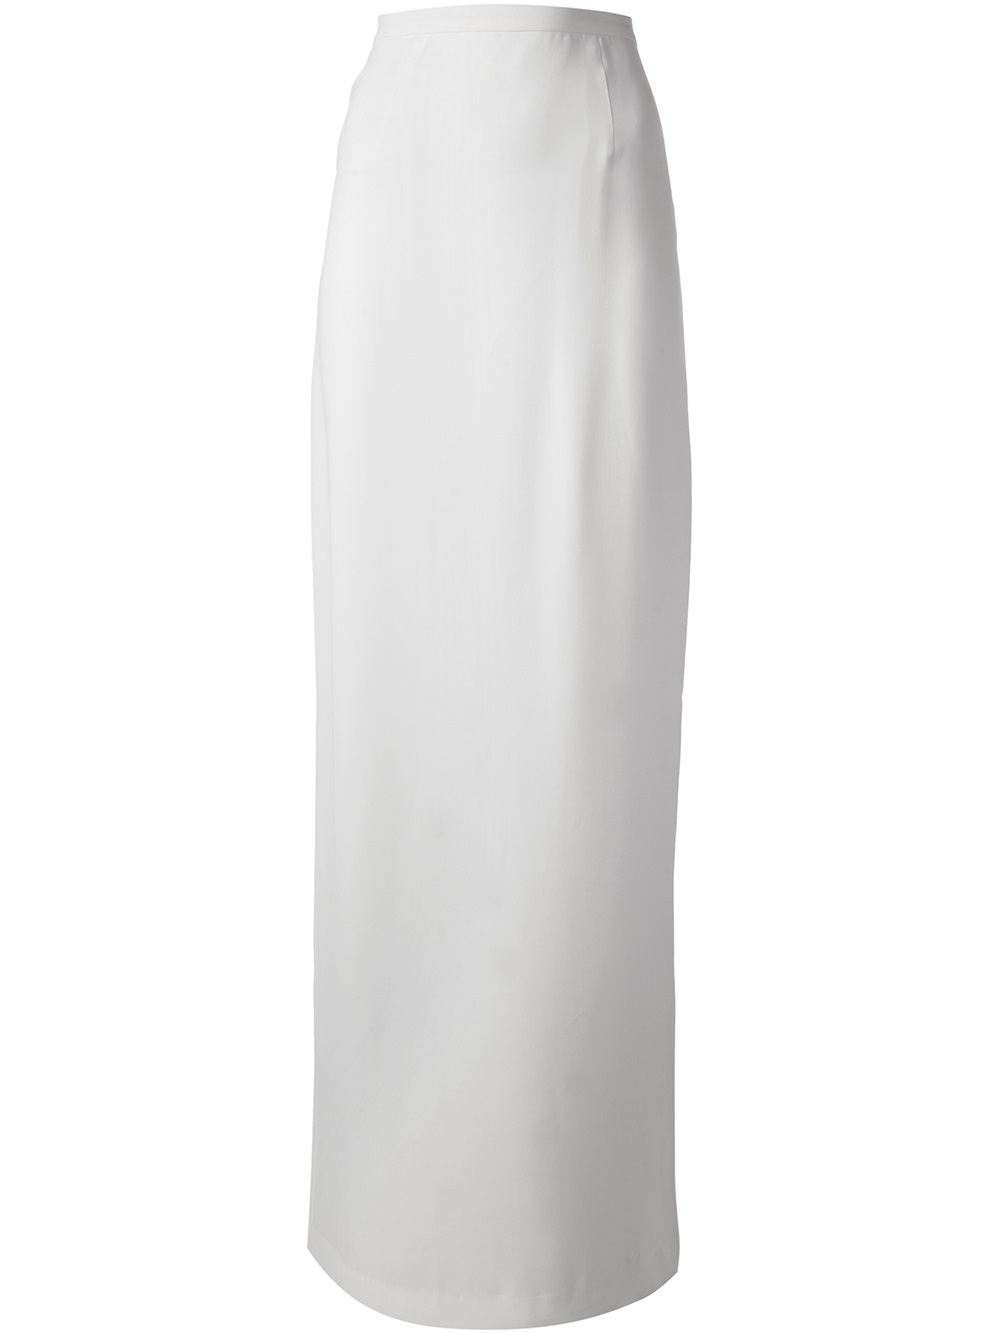 White Skirt Long 121